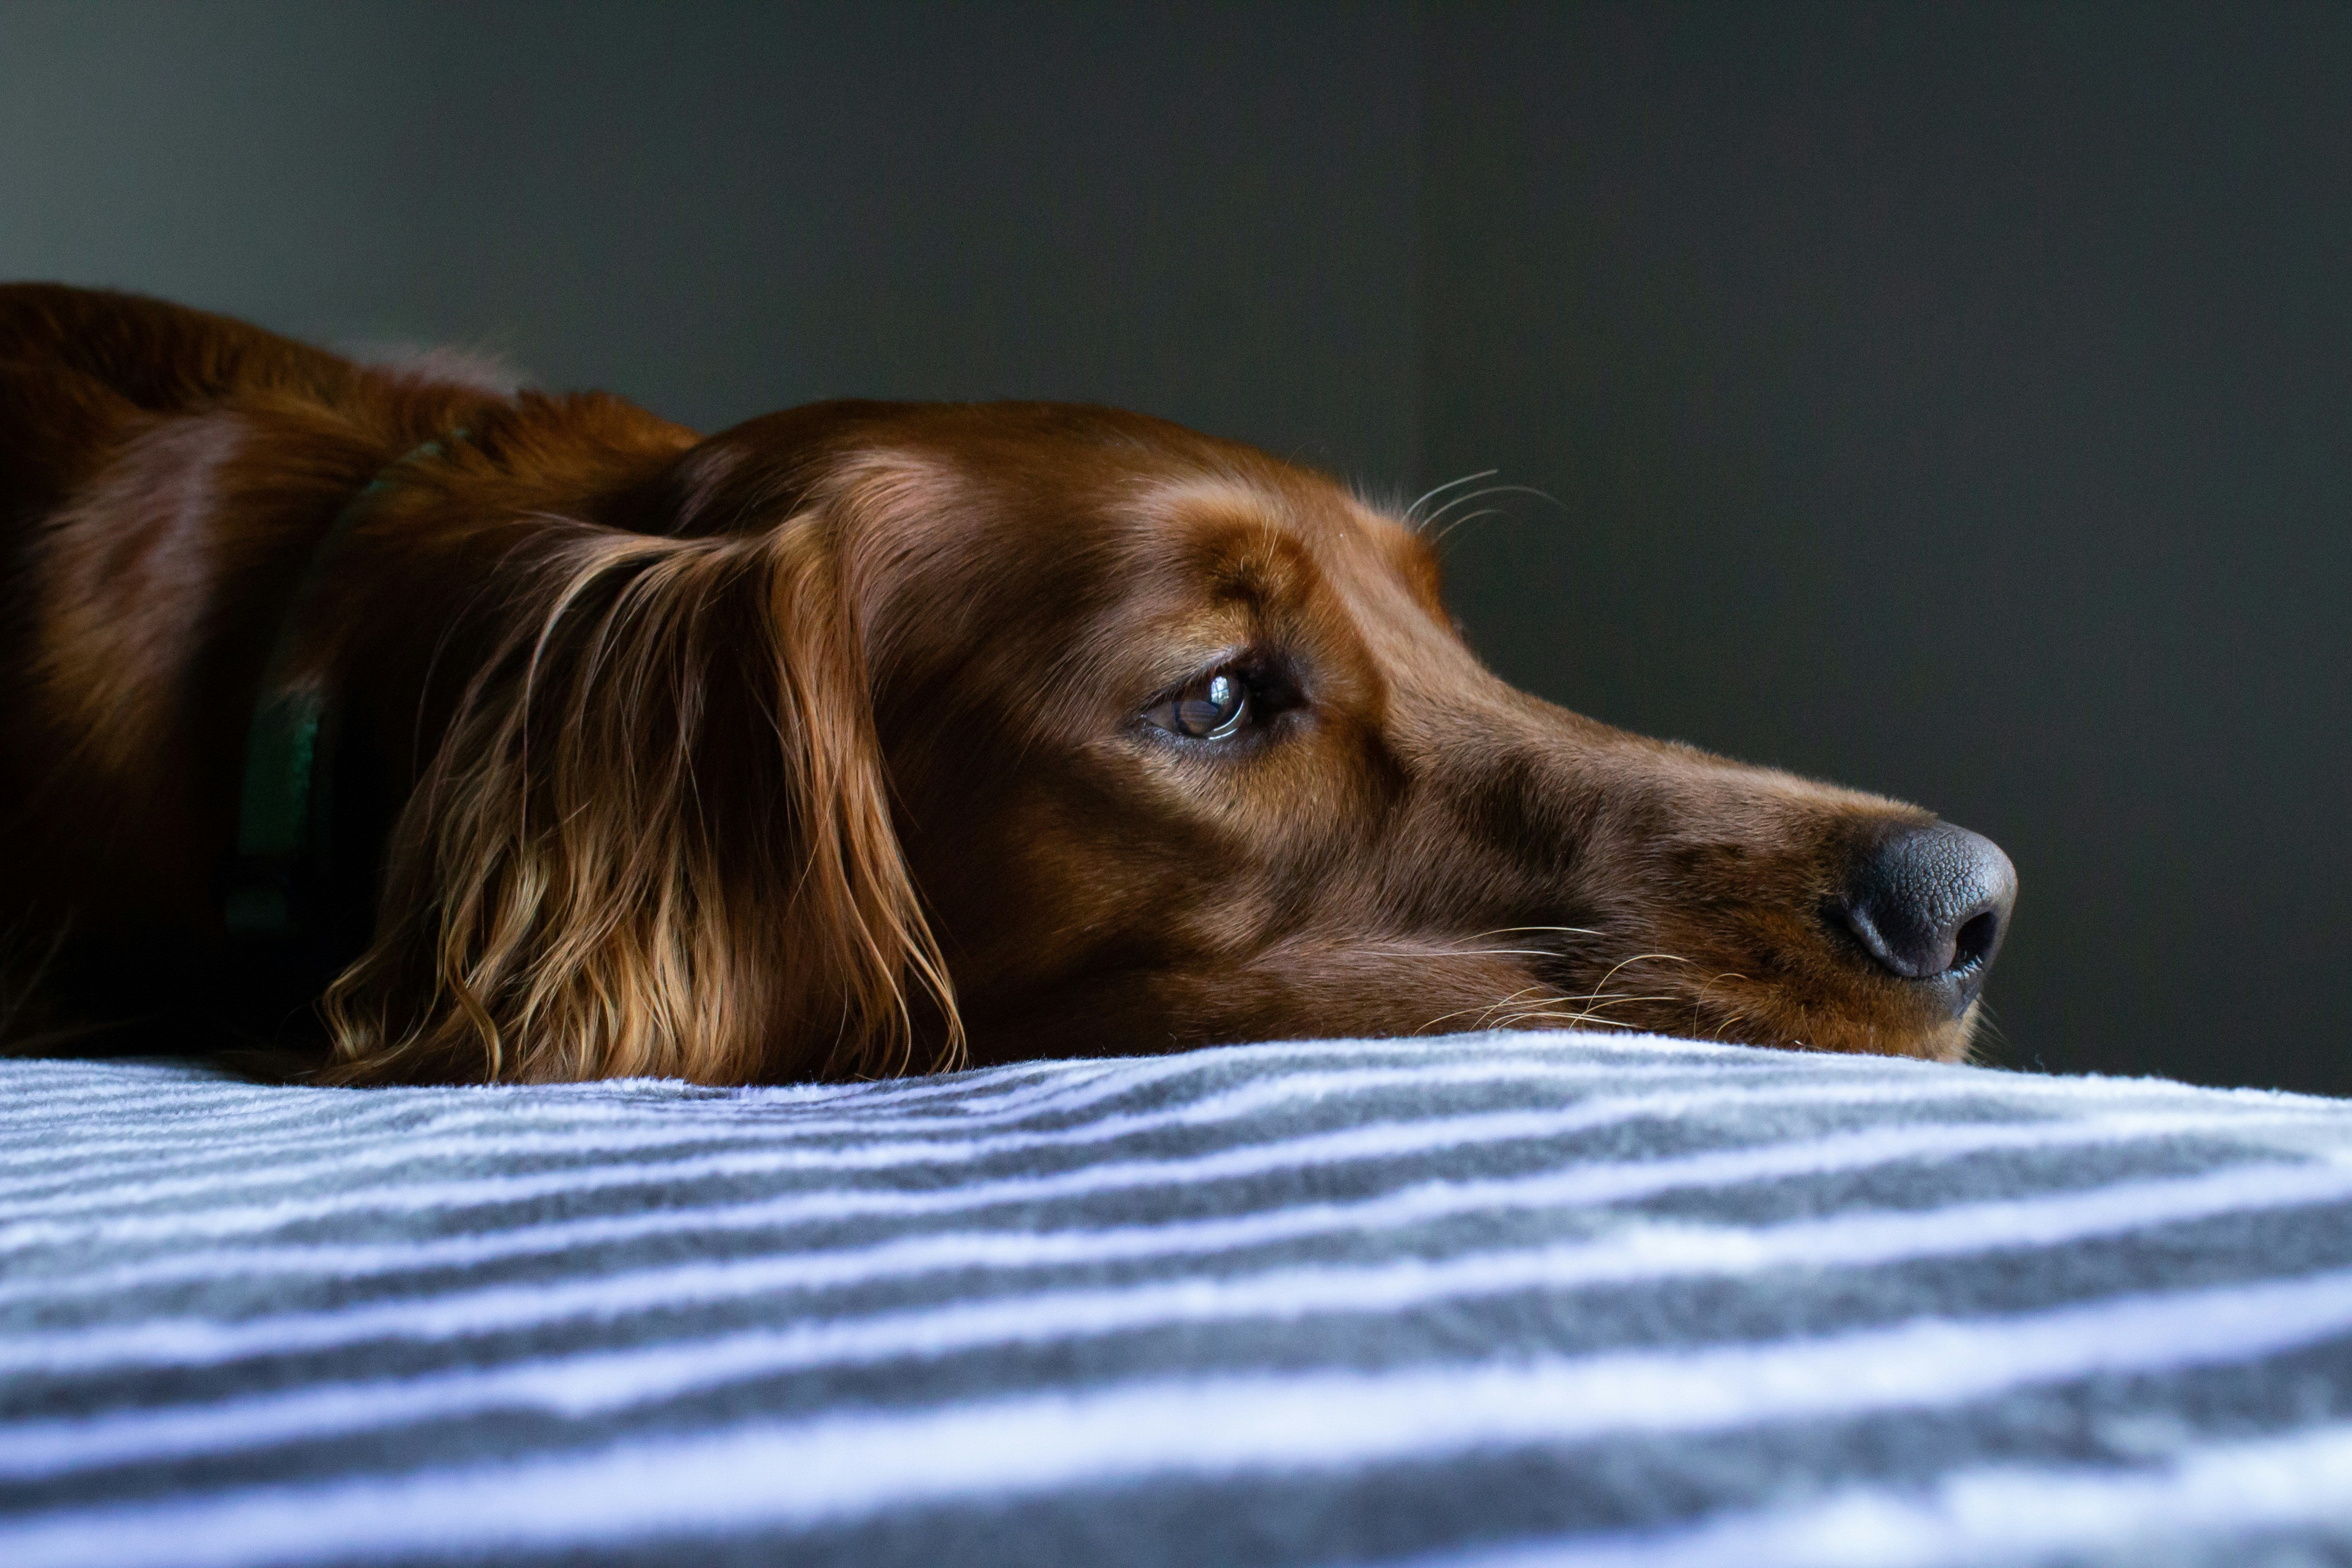 ALT IMG TXT: A reddish-brown dog lying on a blue blanket.